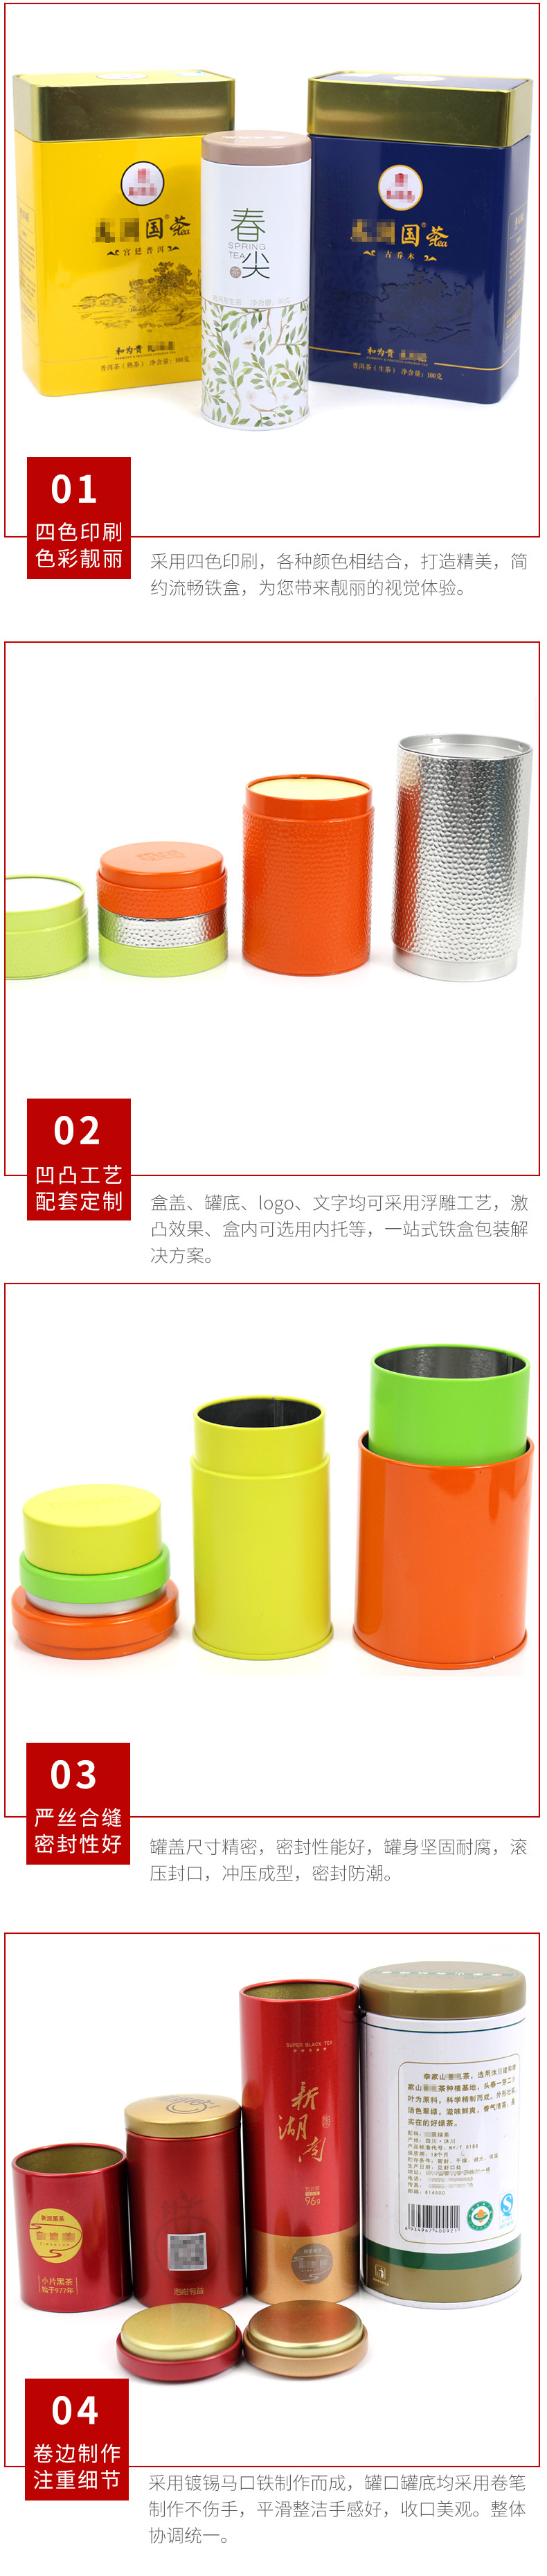 圆形马口铁罐定制 通用茶叶包装铁罐 茶叶马口铁罐包装生产厂家示例图12